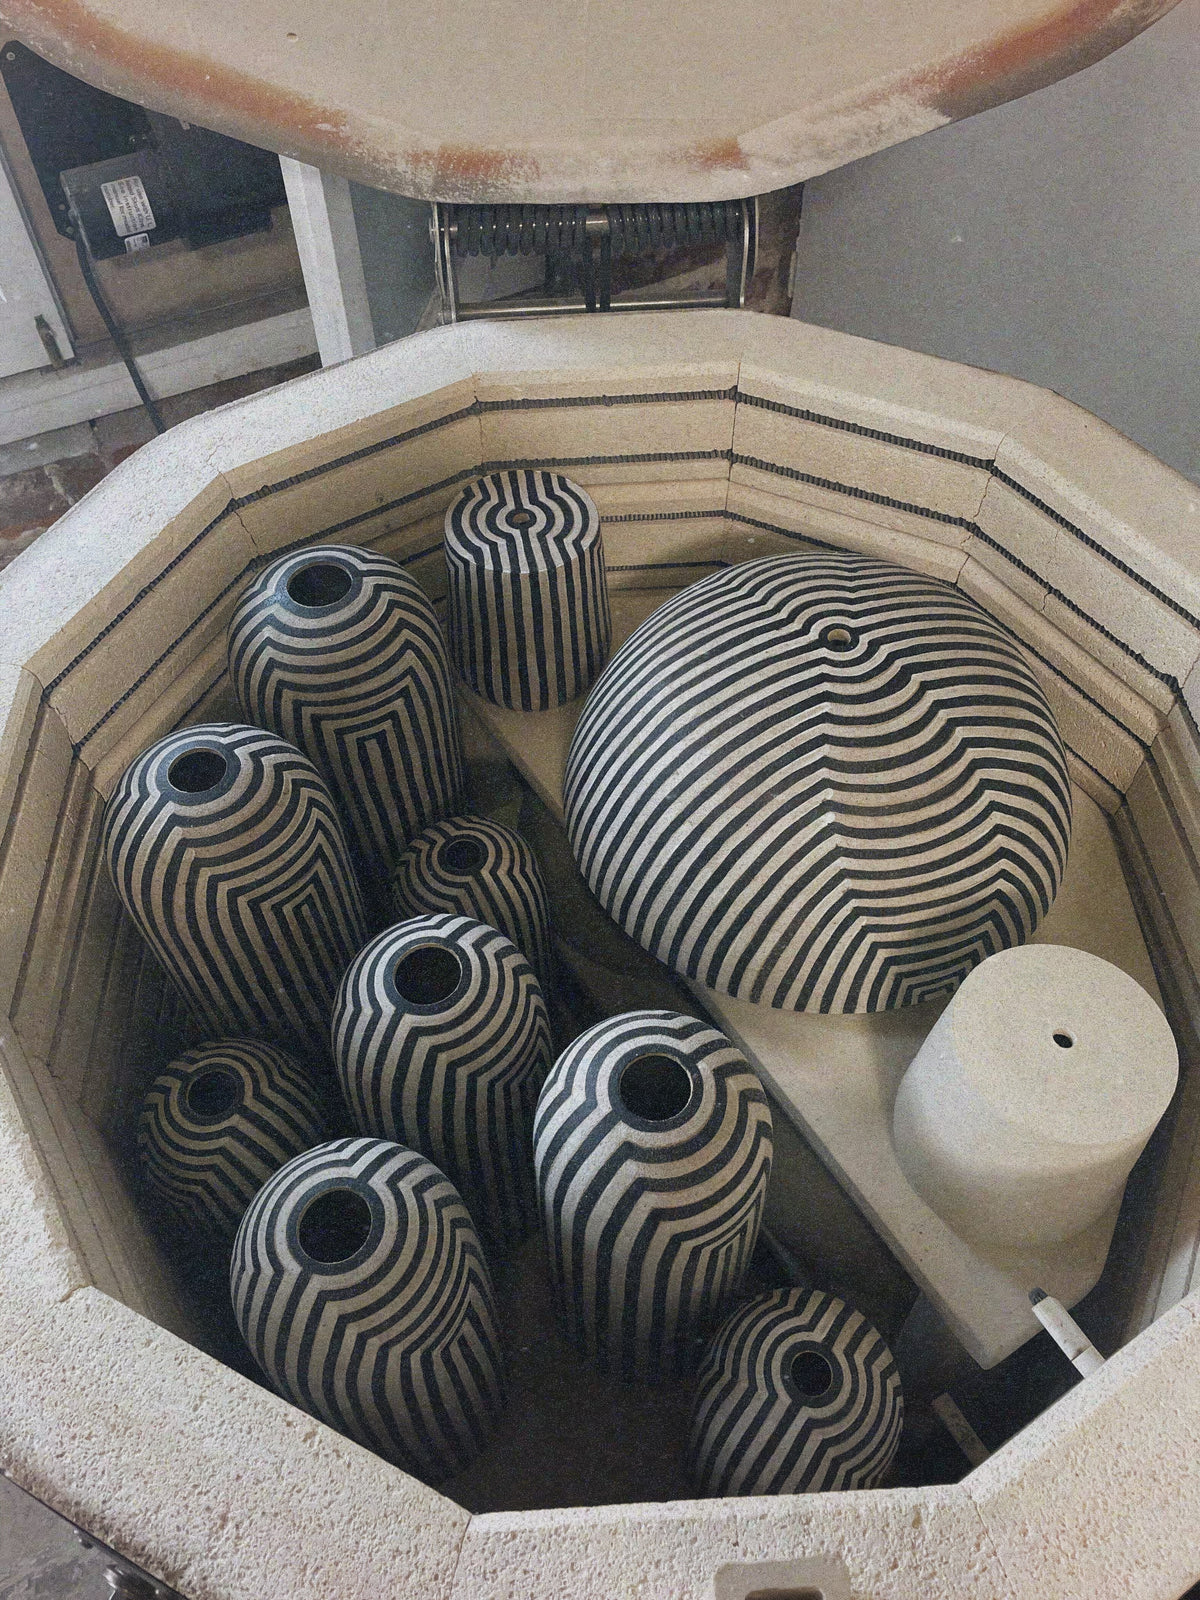 Ceramicah Striped lamps in kiln 